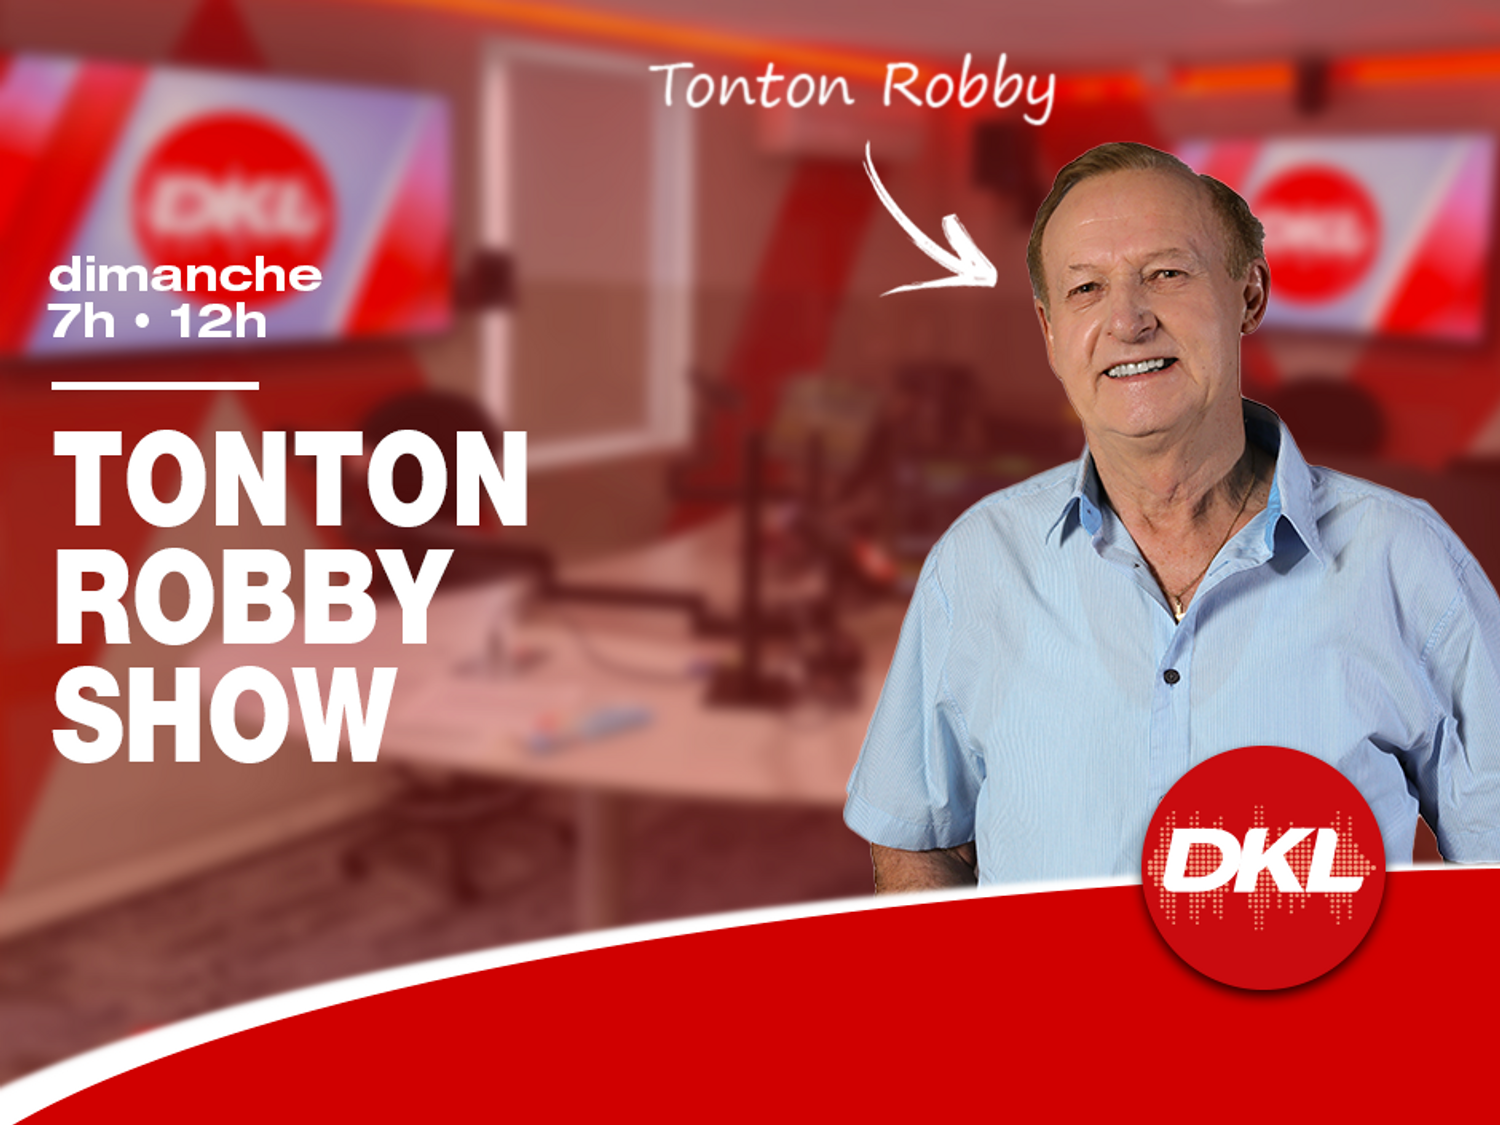 Tonton robby show